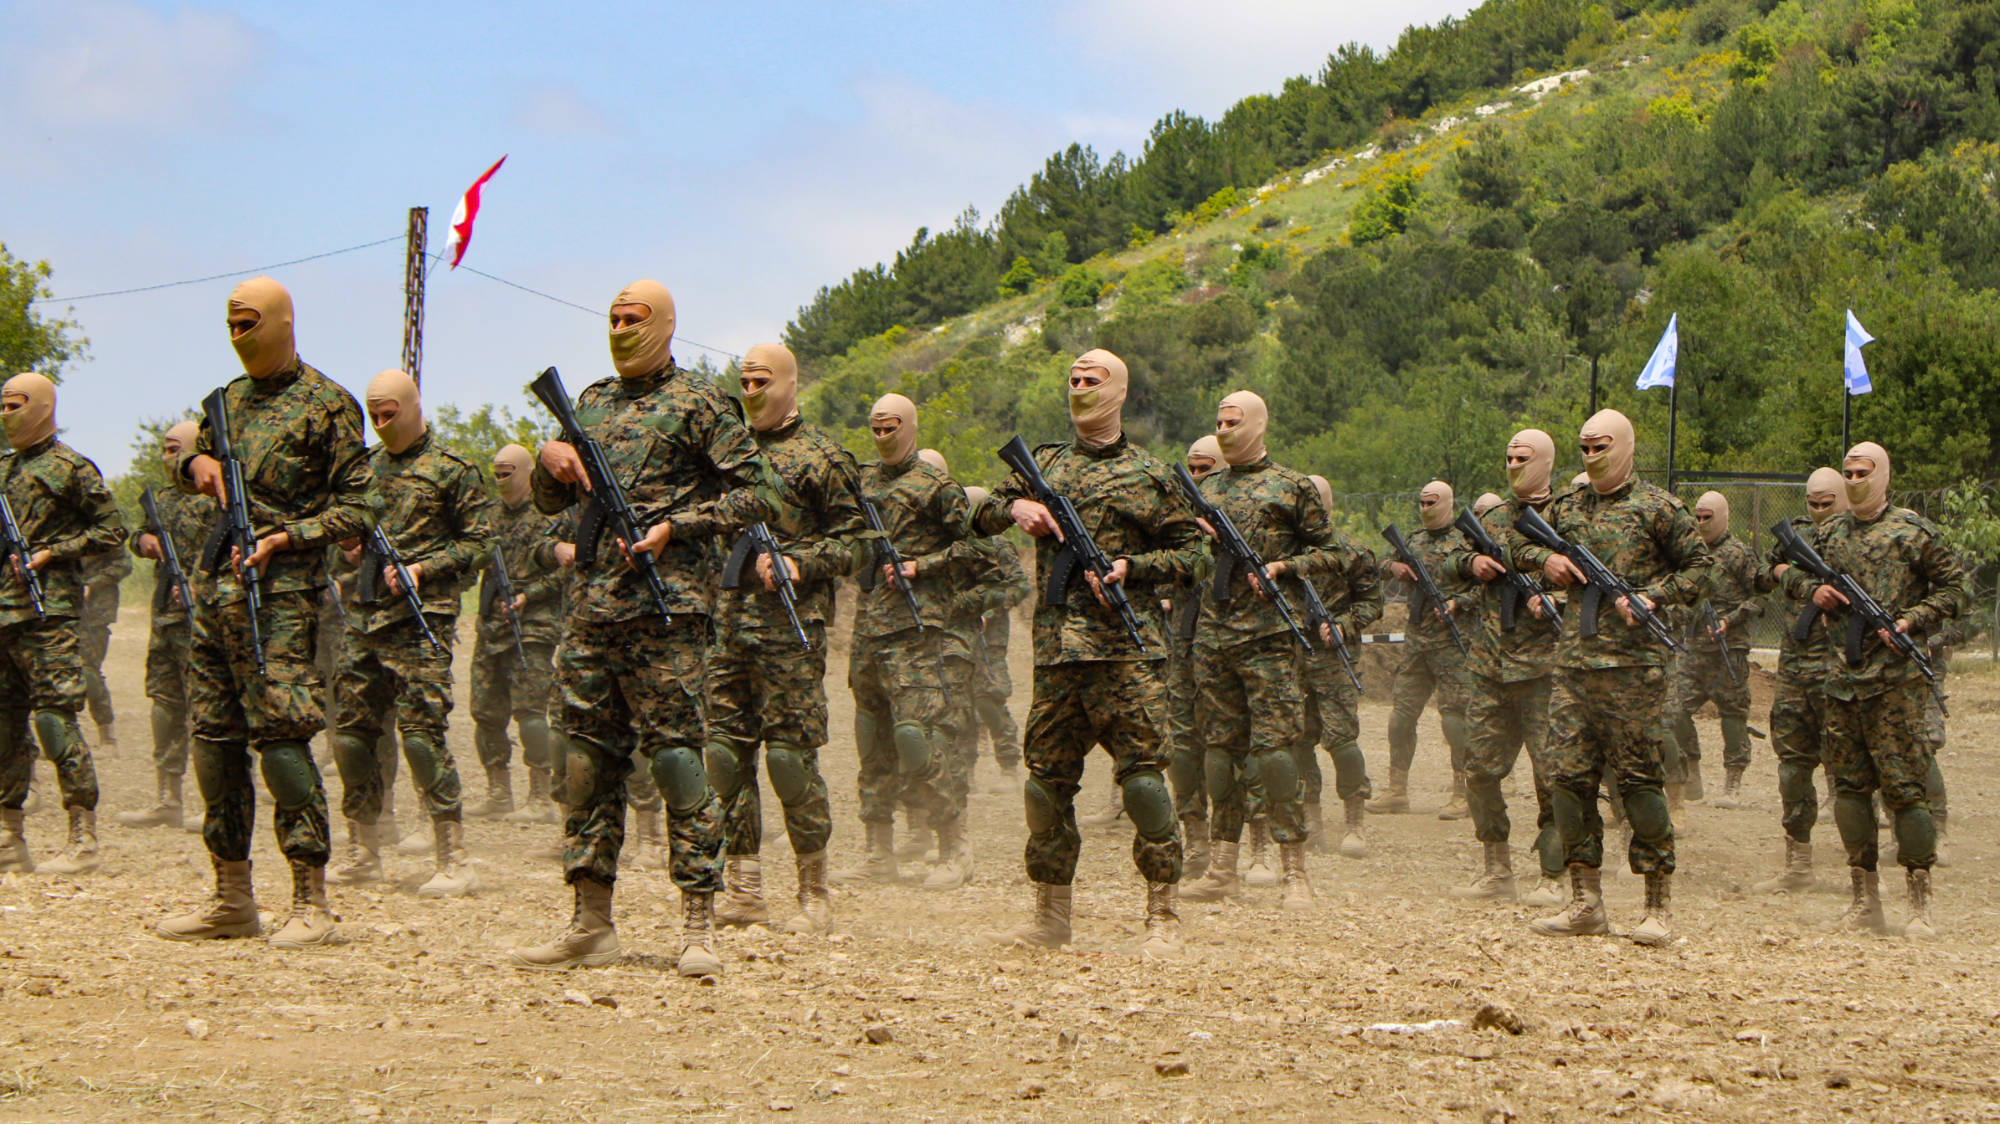 Les combattants du Hezbollah avec des fusils AK-103 de fabrication russe (MEE/Hanna Davis)